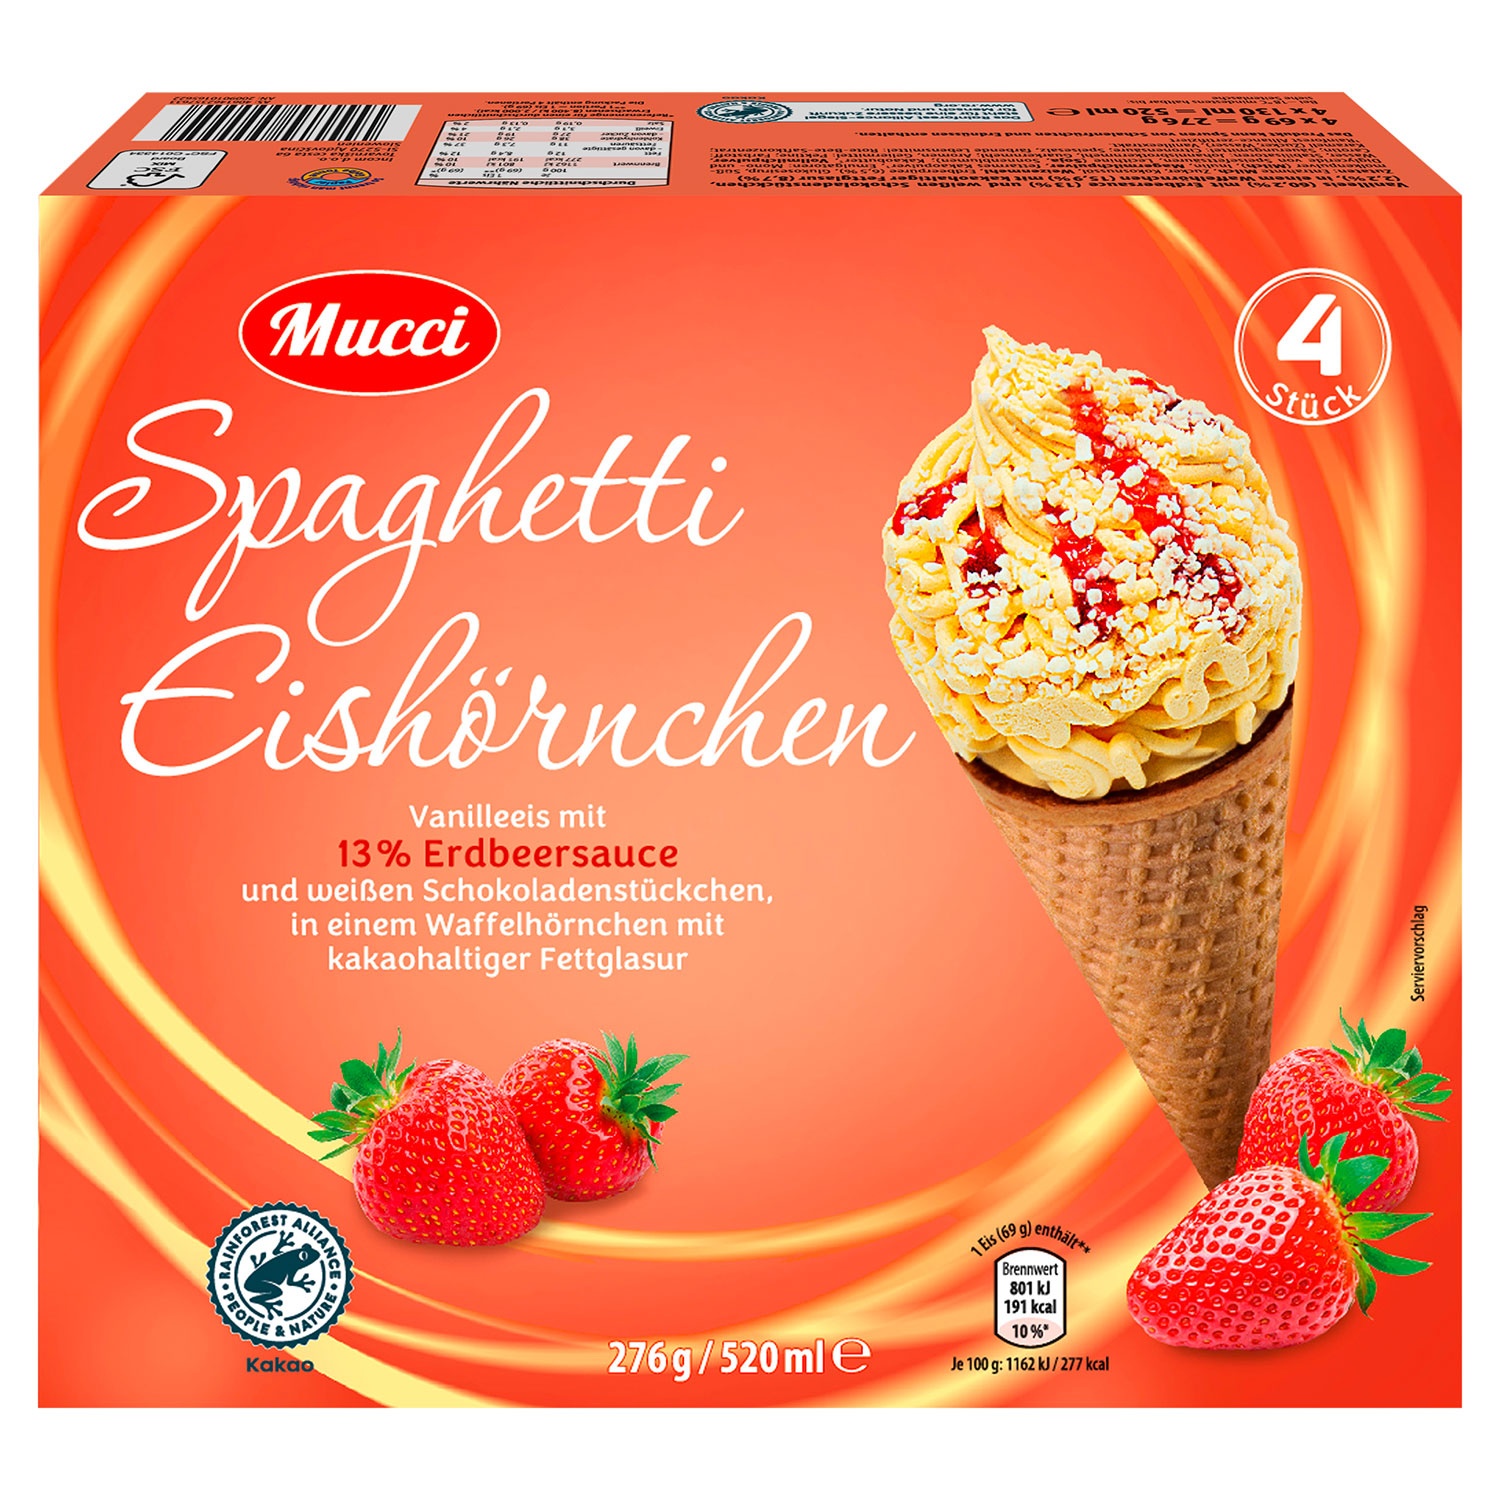 MUCCI Spaghetti-Eishörnchen 520 ml